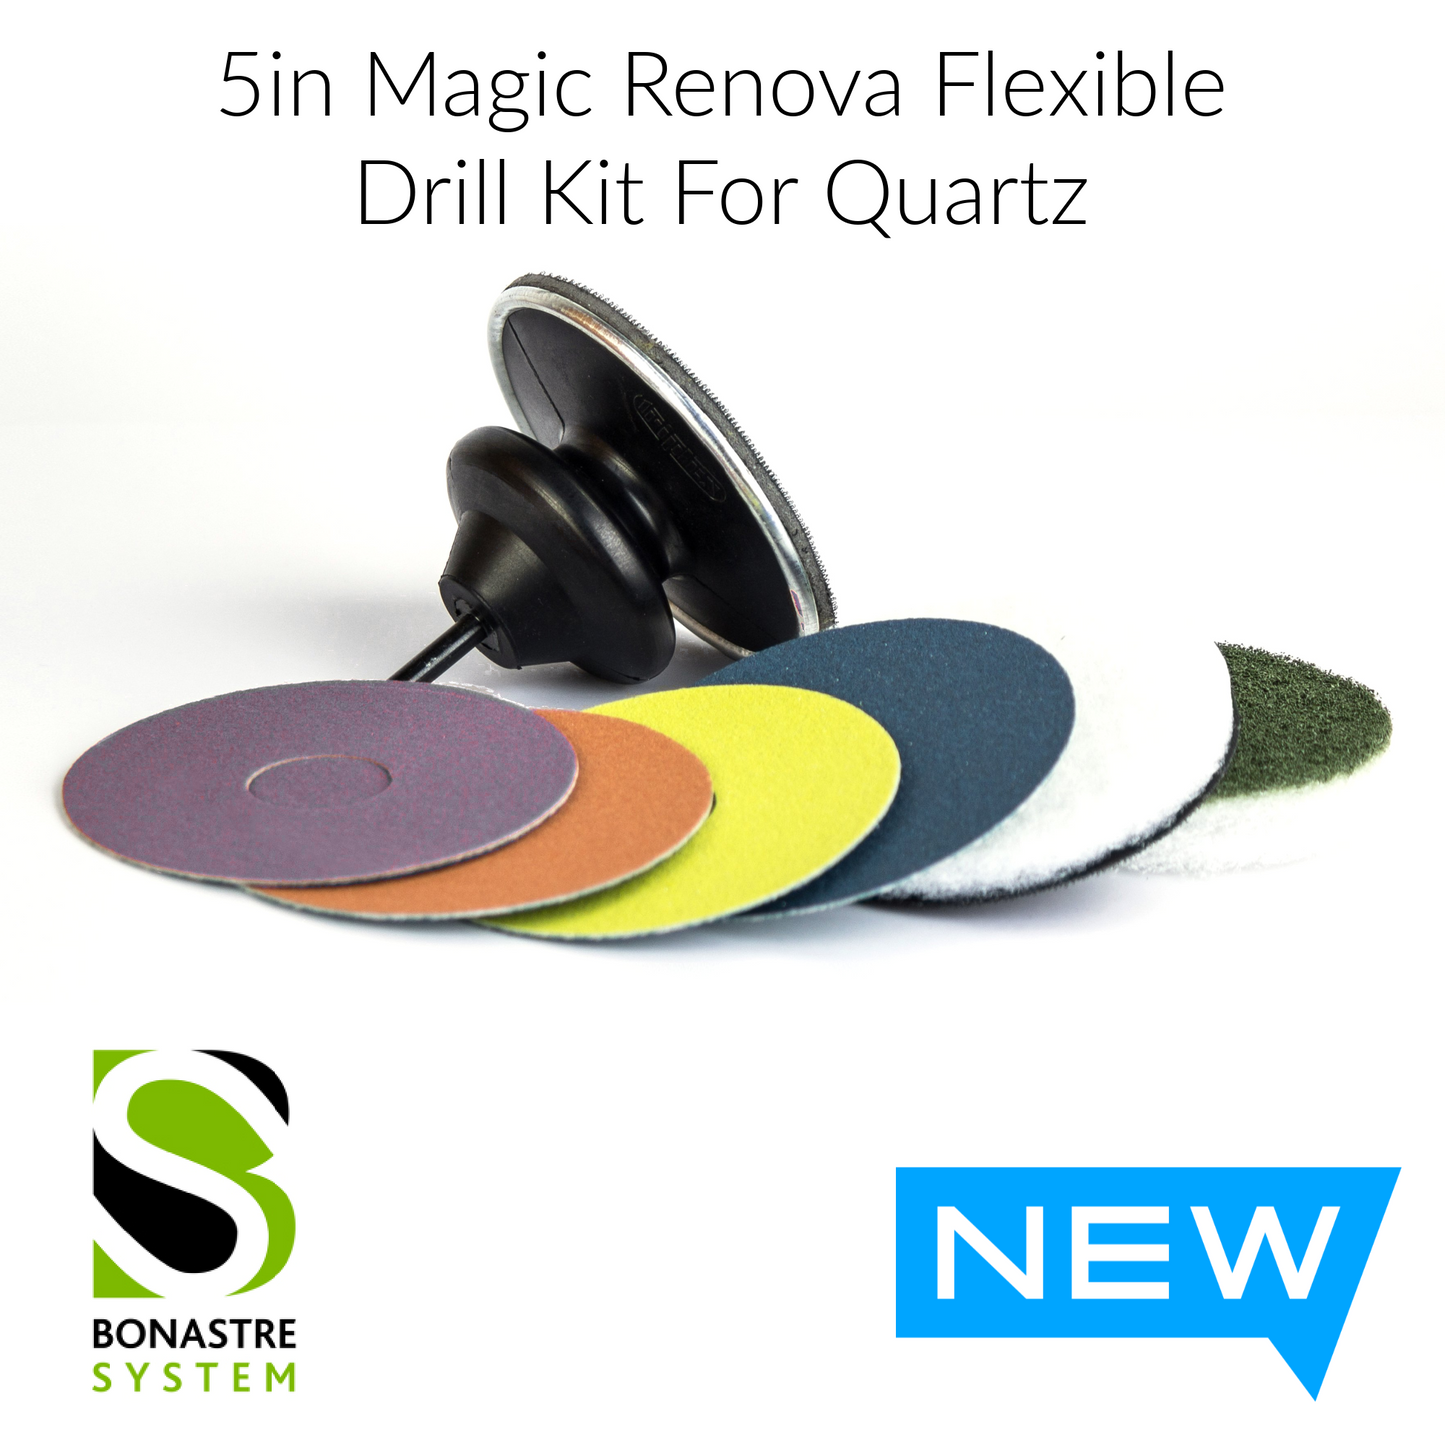 Quartz Polishing Kit - Magic Renova Flexible Drill Kit for Quartz